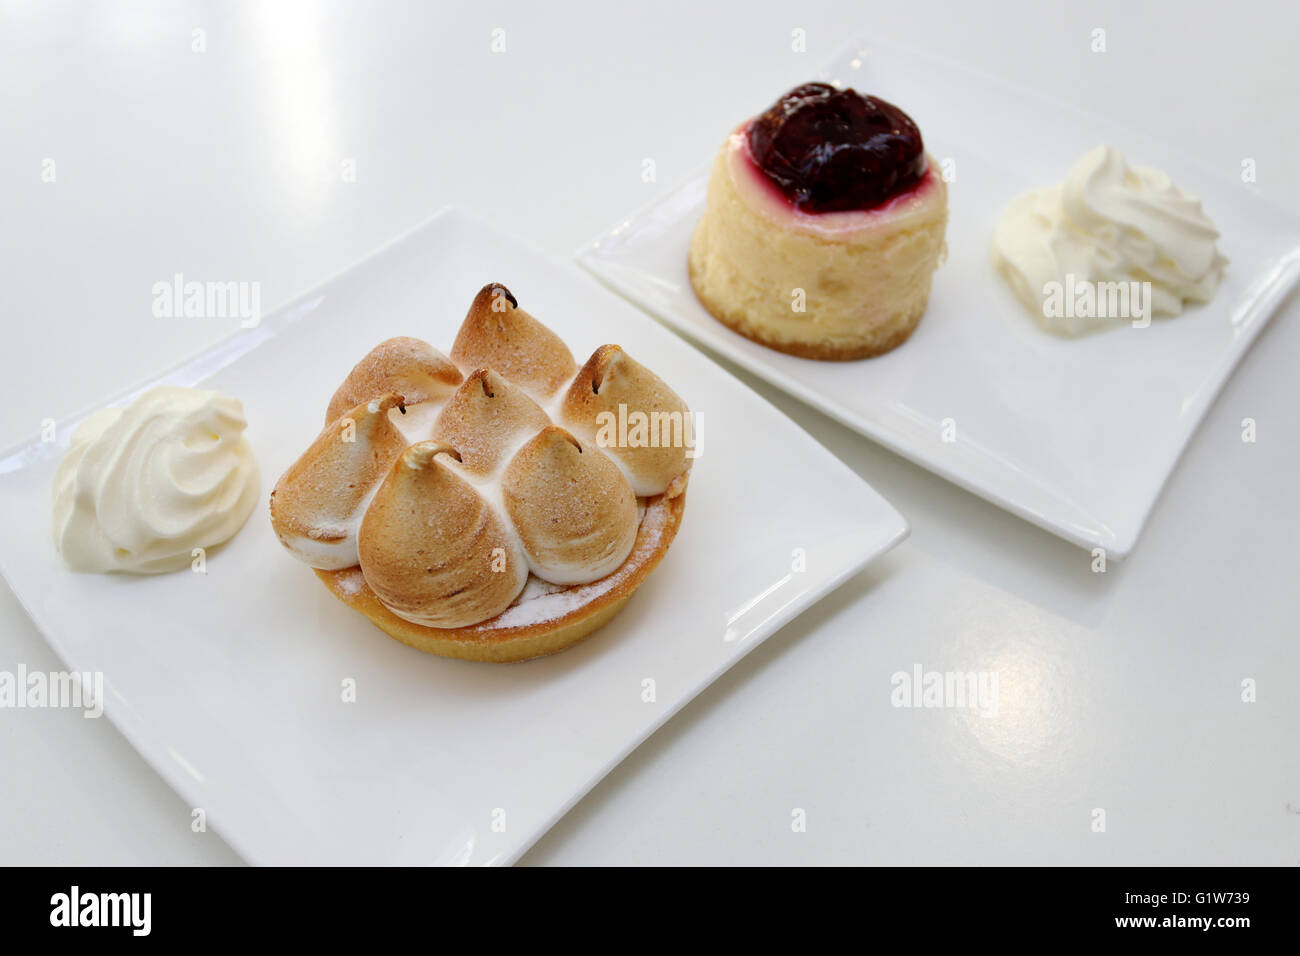 Merengue de limón y strawberry cheesecake sobre placa blanca. Foto de stock